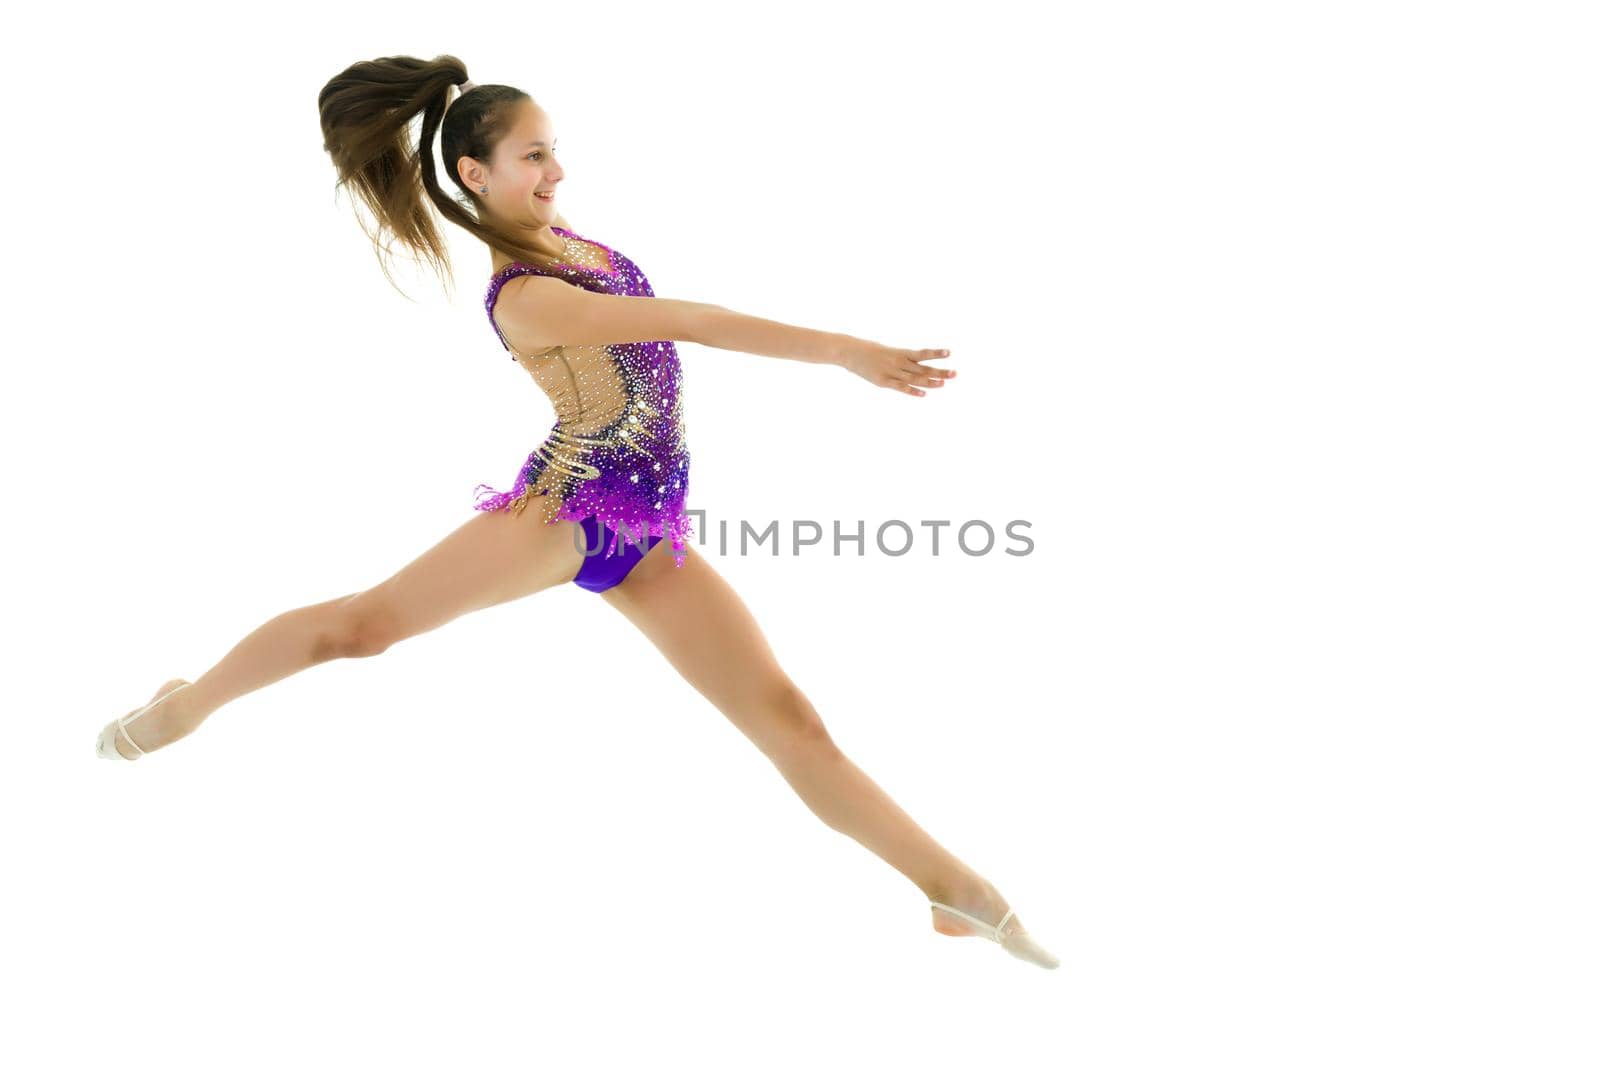 The girl gymnast performs a jump. by kolesnikov_studio